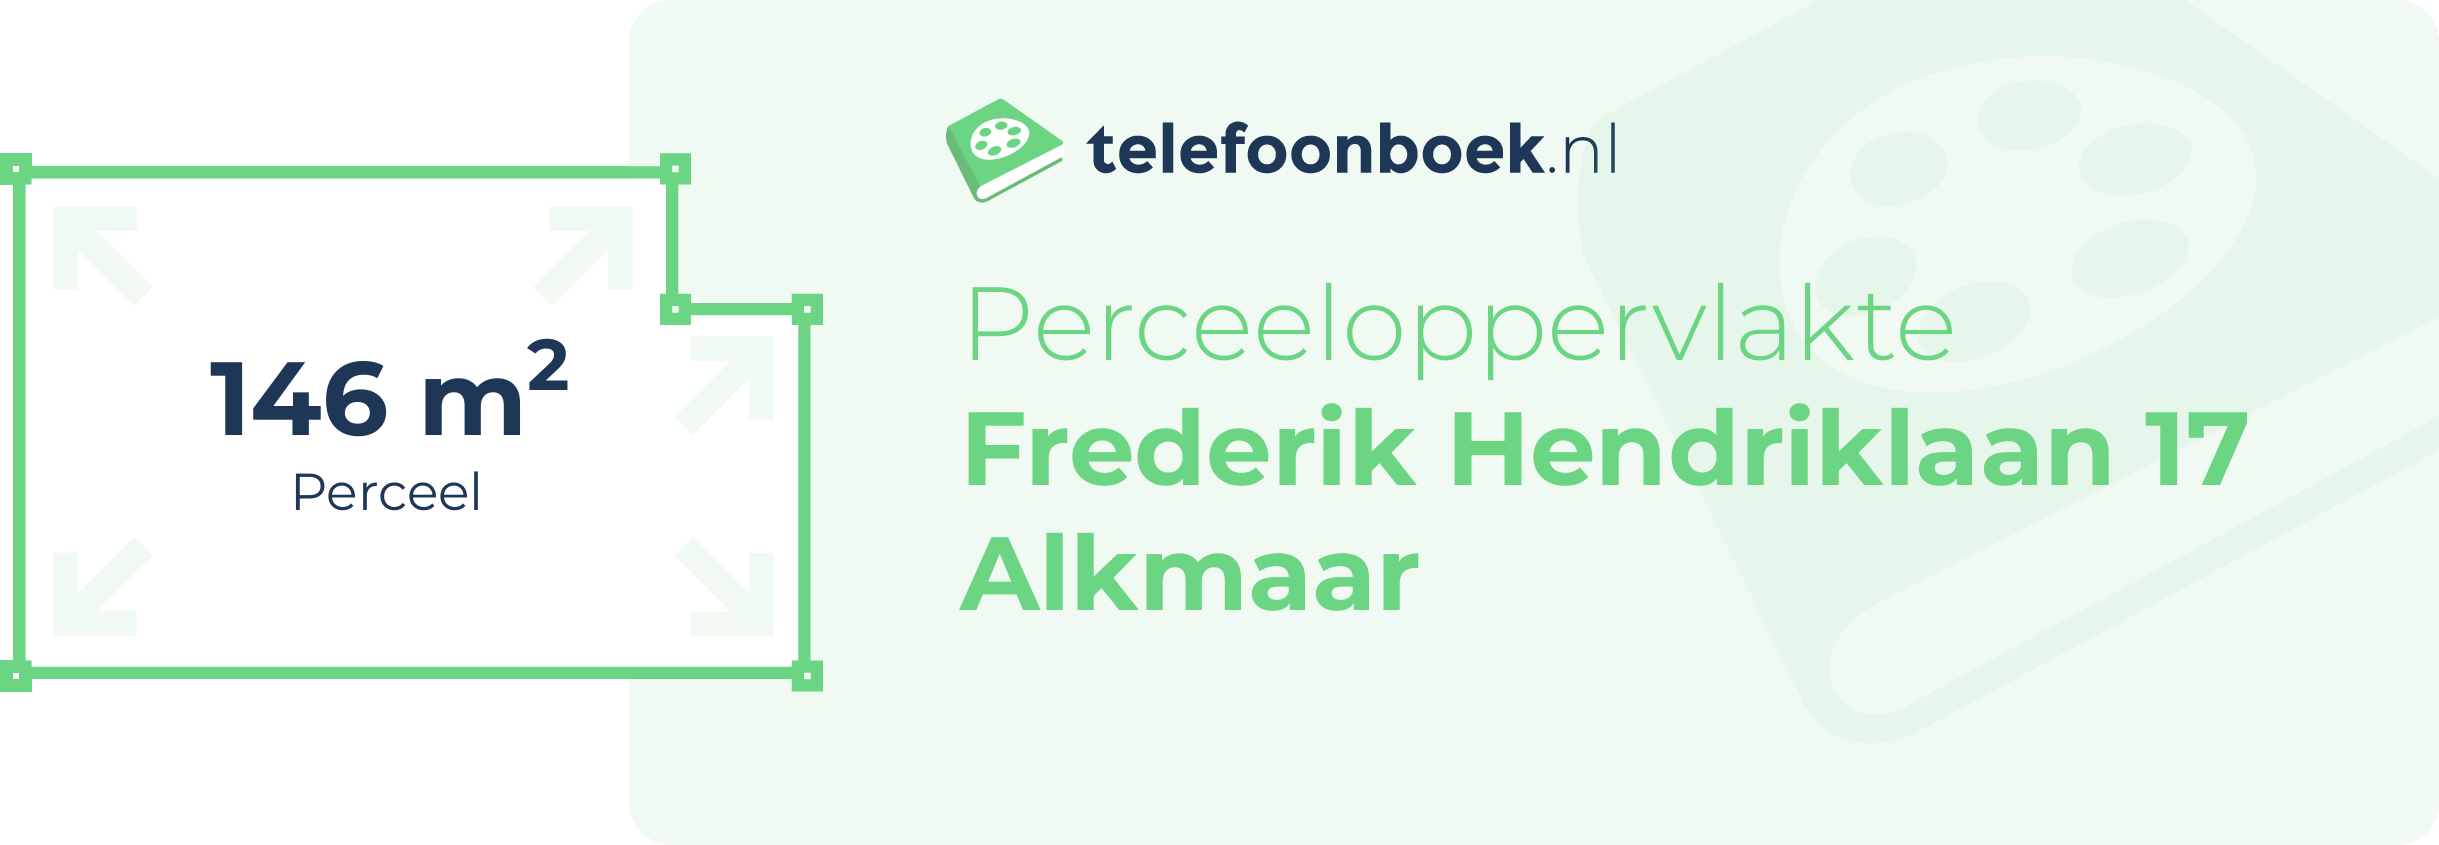 Perceeloppervlakte Frederik Hendriklaan 17 Alkmaar